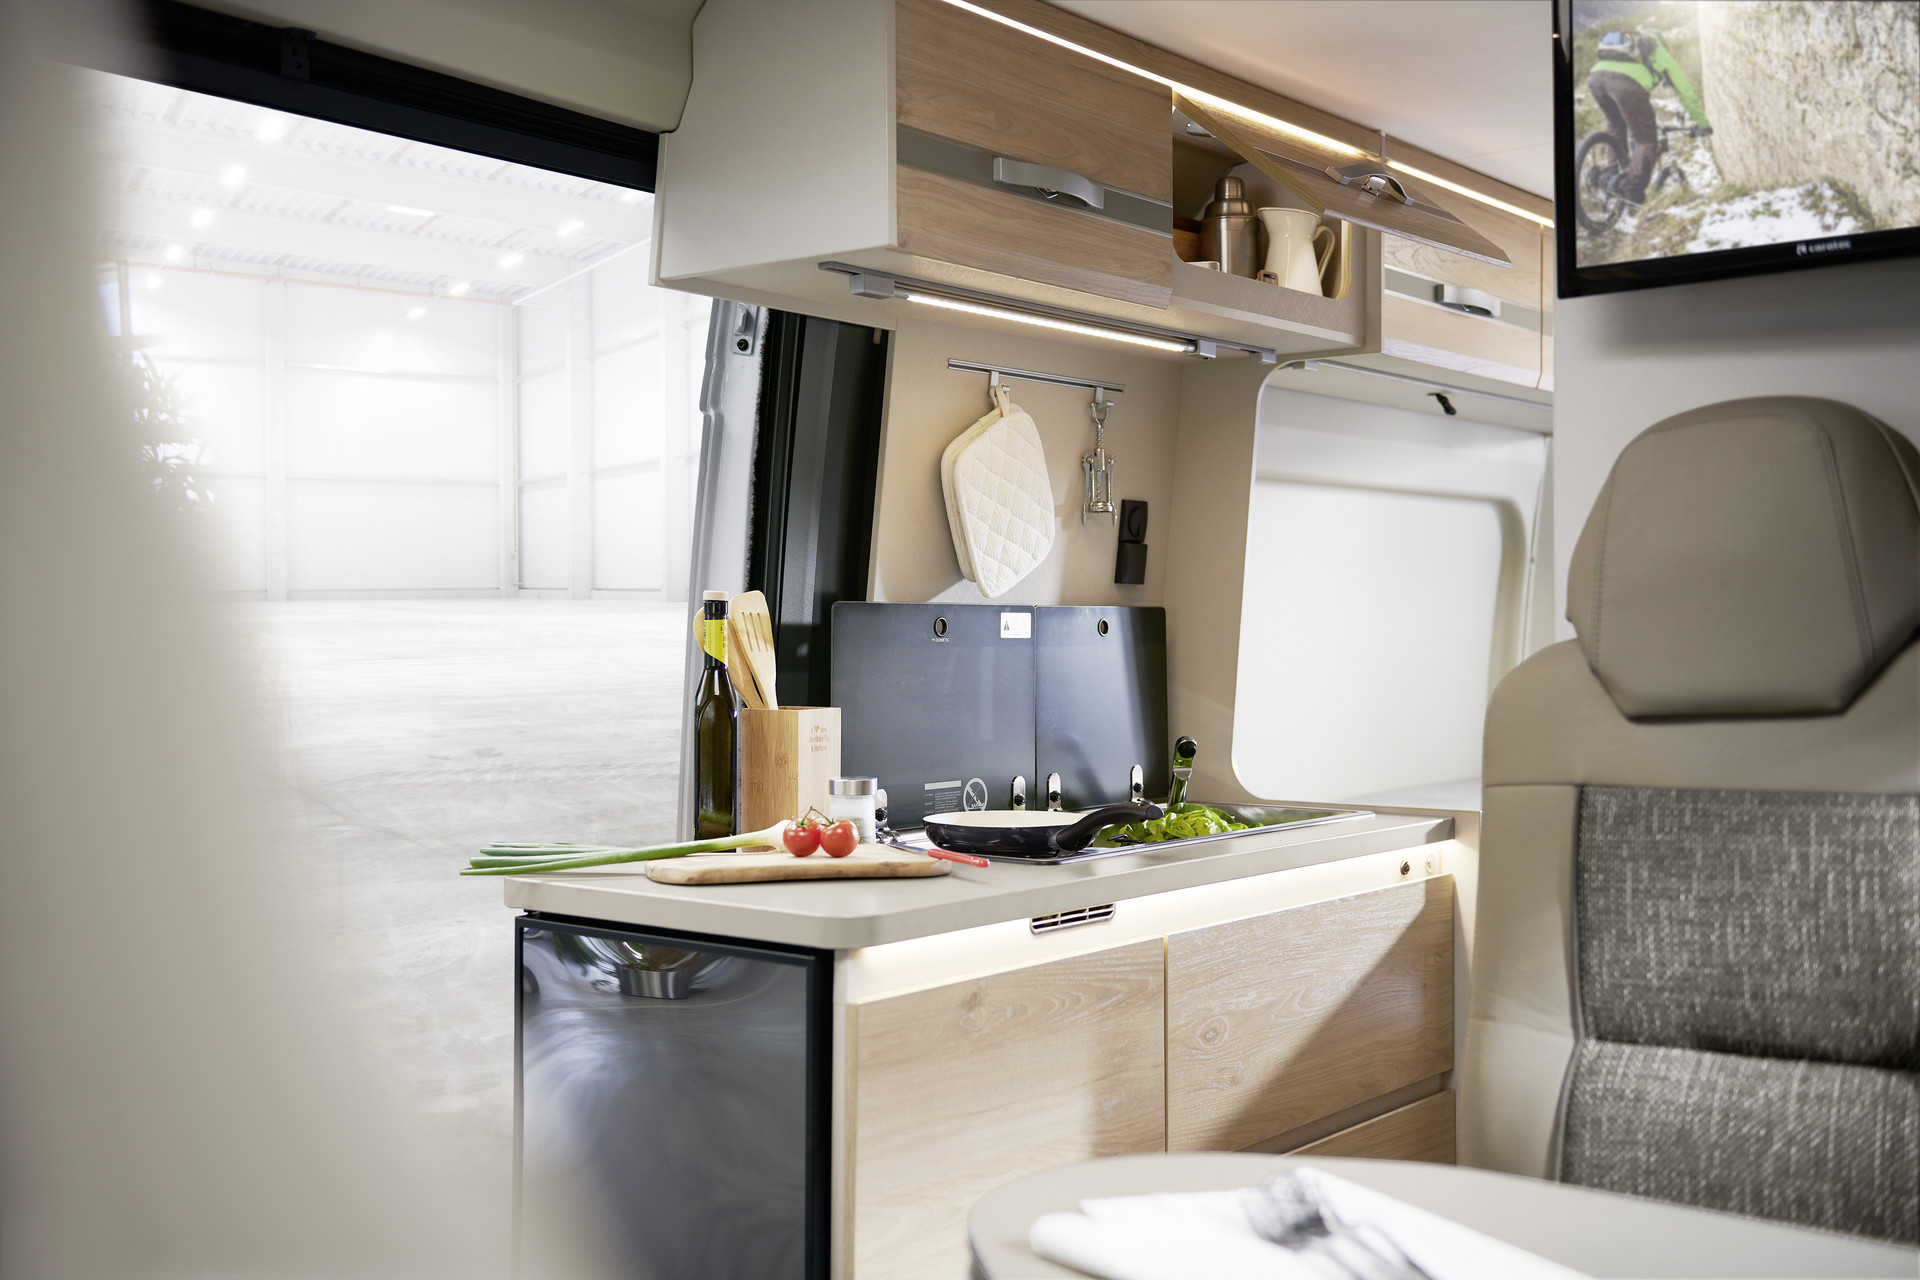 Cuisinez (presque) comme à la maison. Exploitation optimale de l’espace et des surfaces. Grâce à sa porte s’ouvrant à 180°, le grand réfrigérateur est facilement accessible de l’intérieur et de l’extérieur.